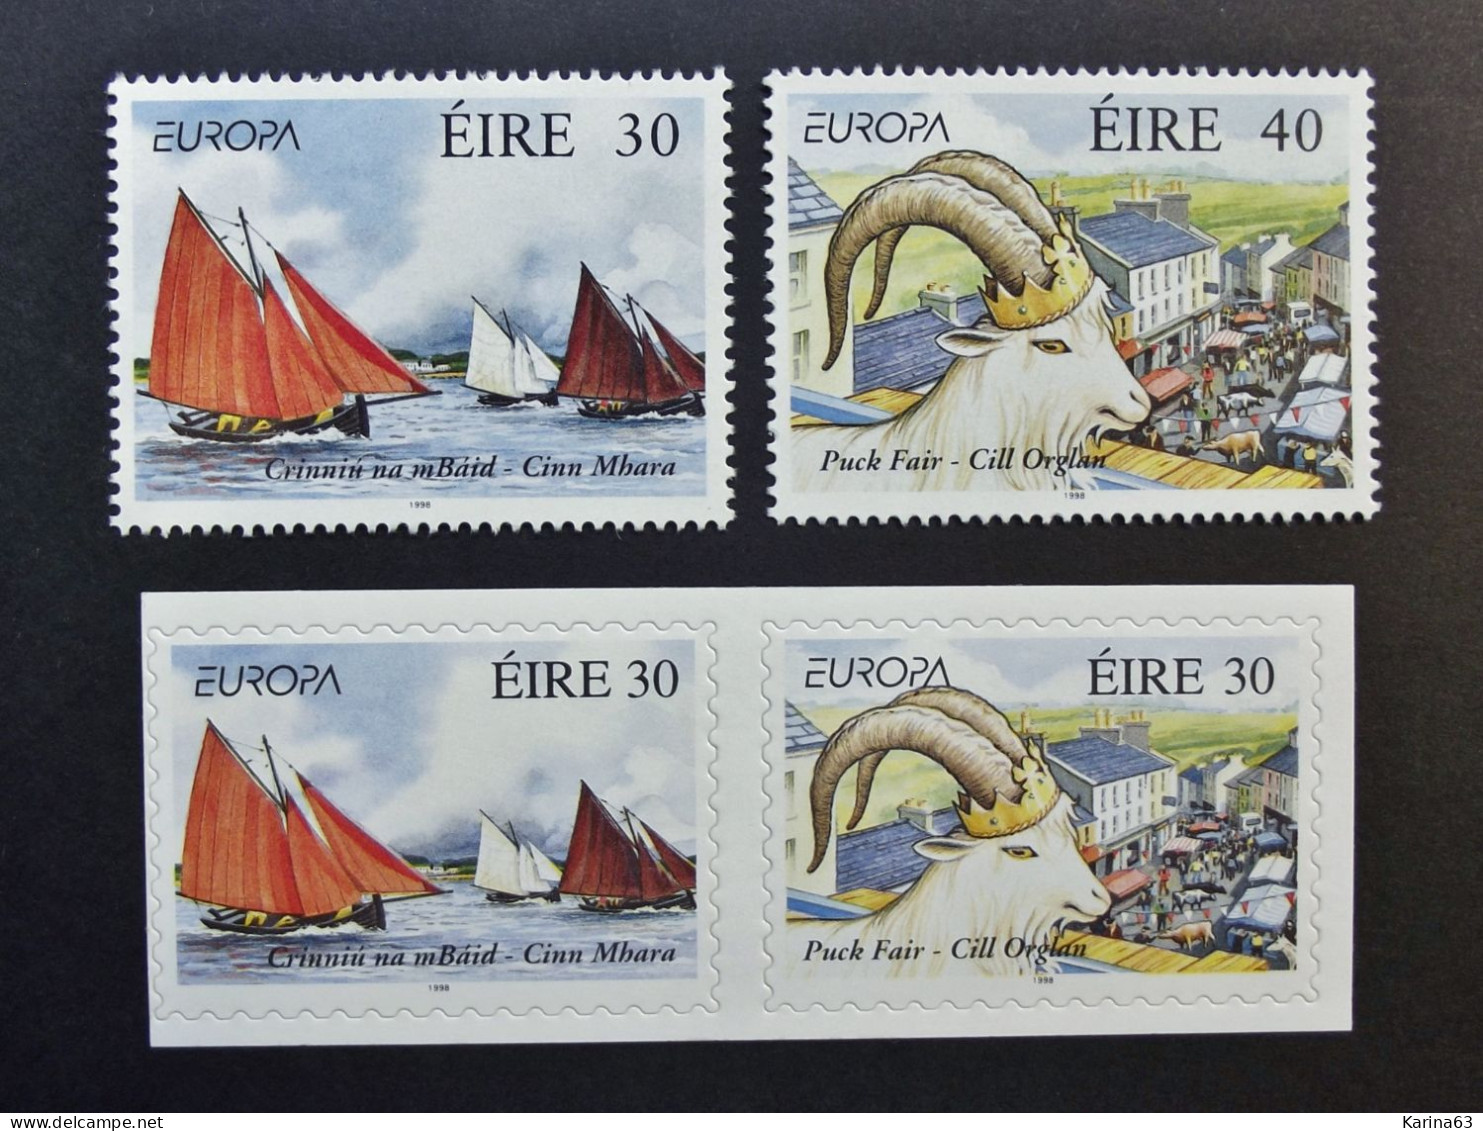 Ireland - Irelande - Eire - 1998 - Y&T N° 1073 / 1076 - (4 Val.) Europa - Festivals - MNH - Postfris - Neufs